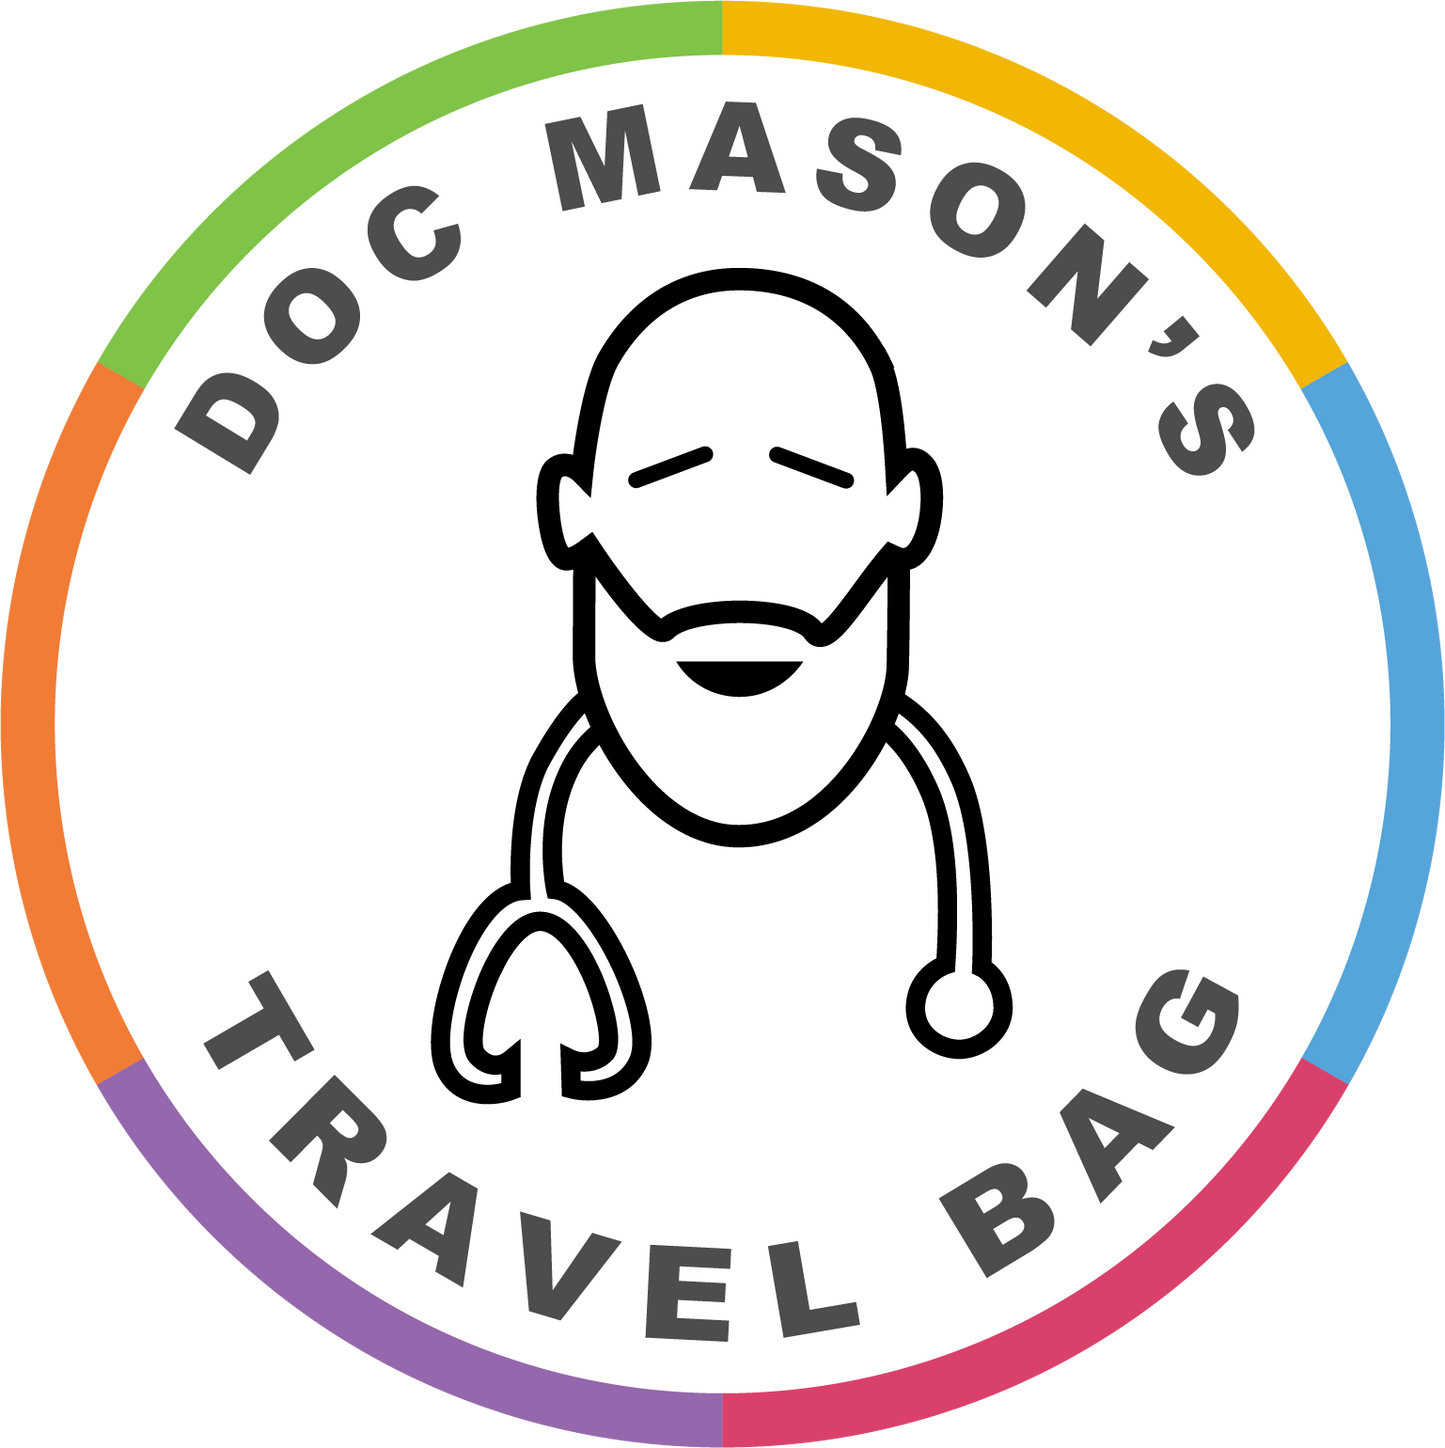 Doc Mason's Travel Bag circle tag